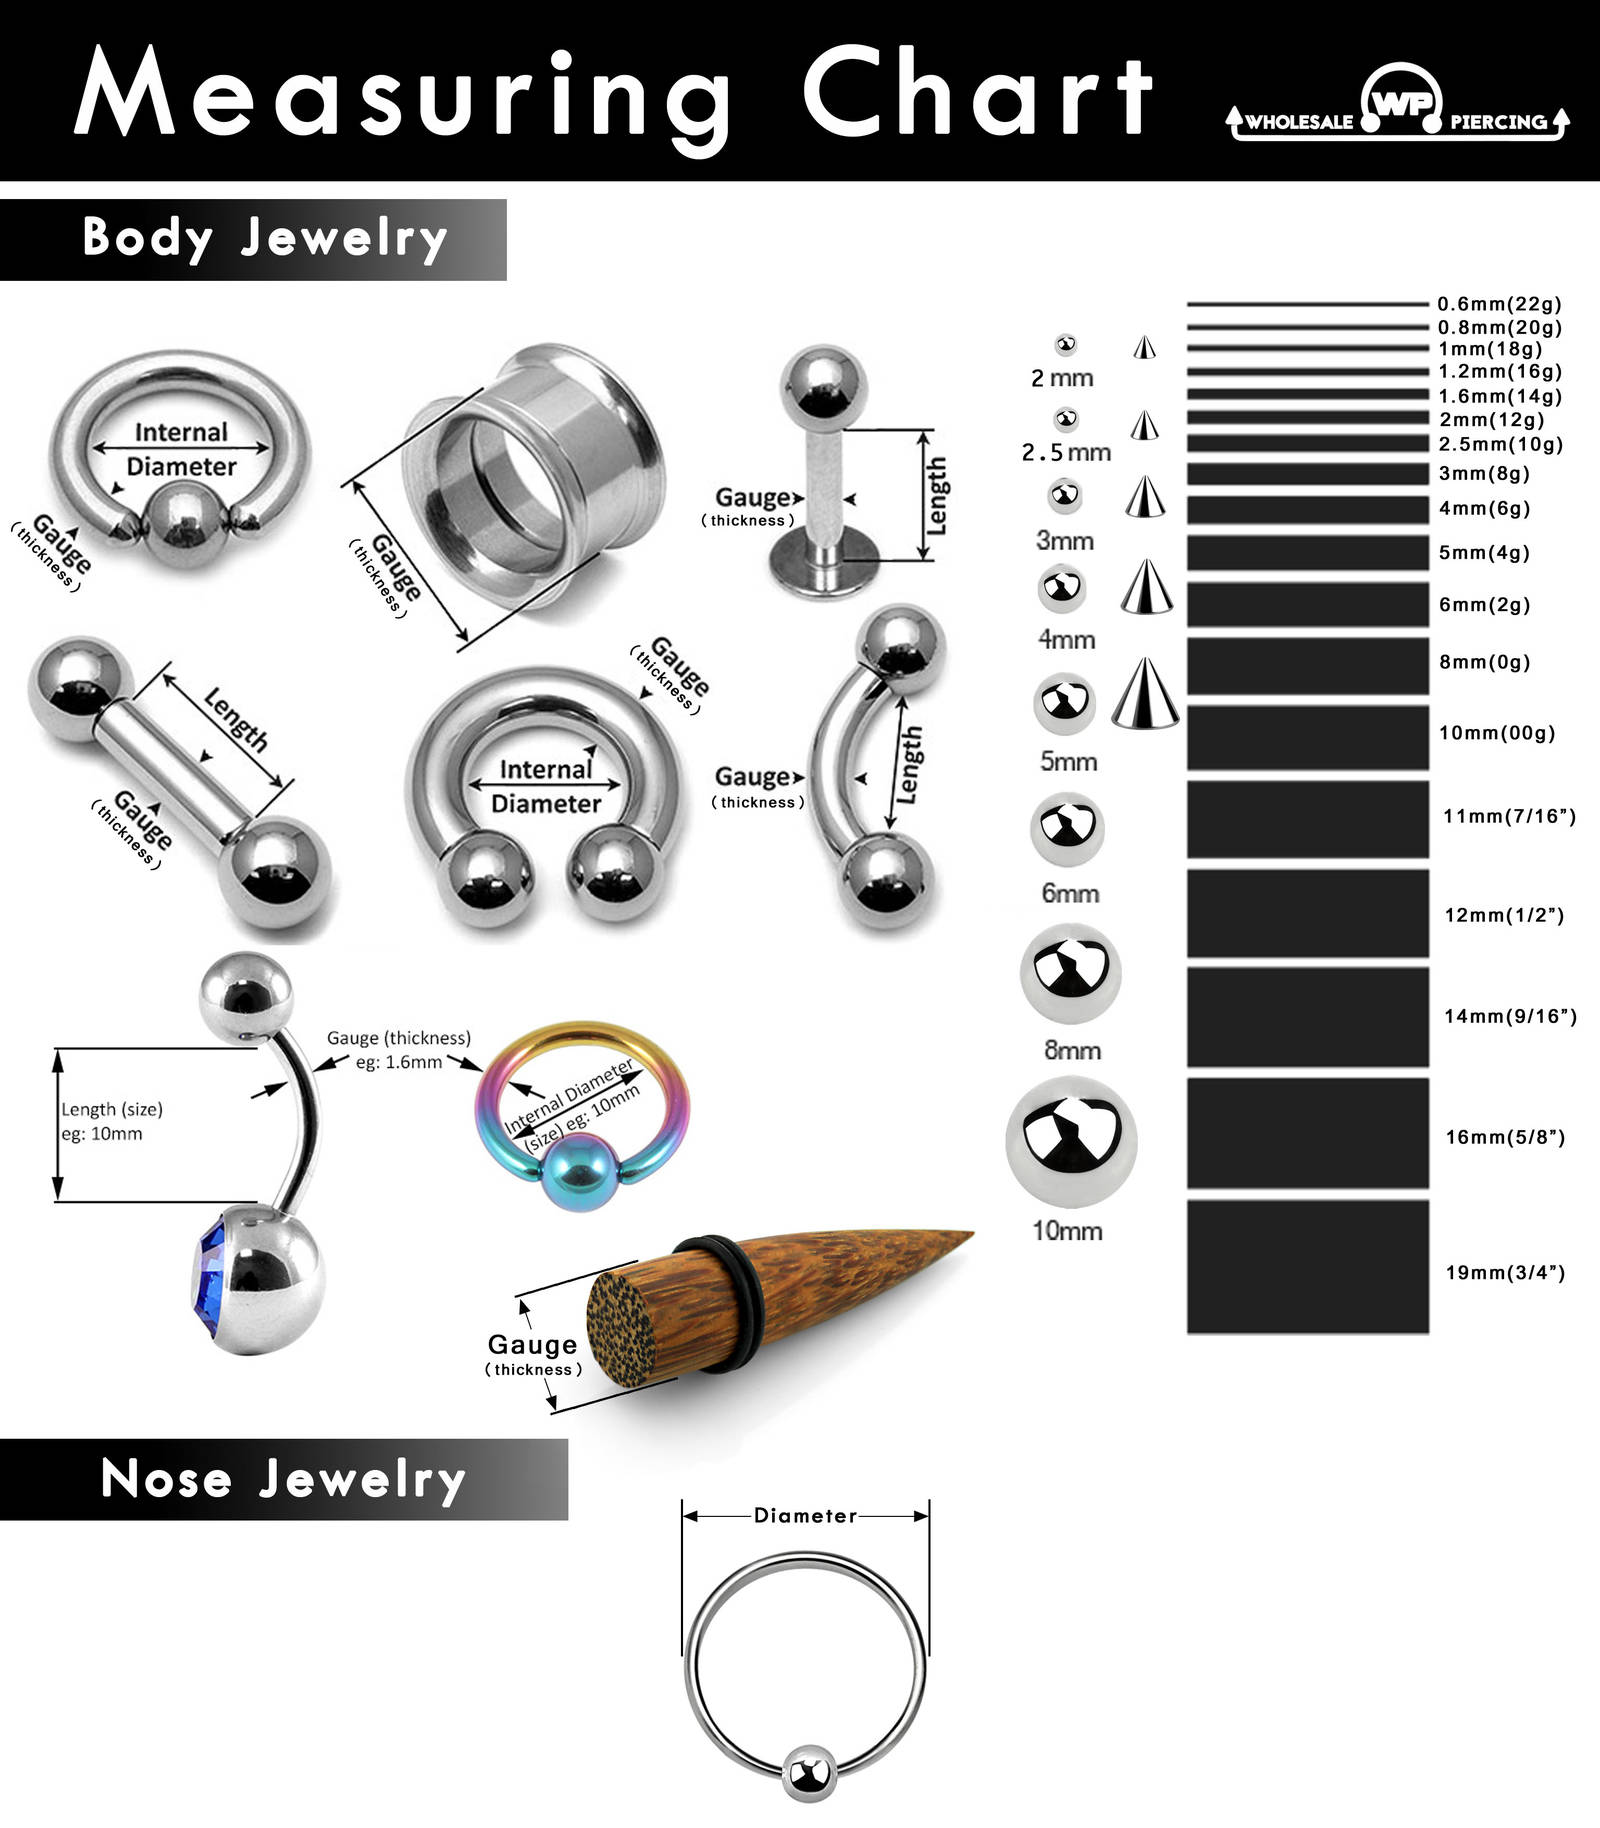 Body Jewelry Measures